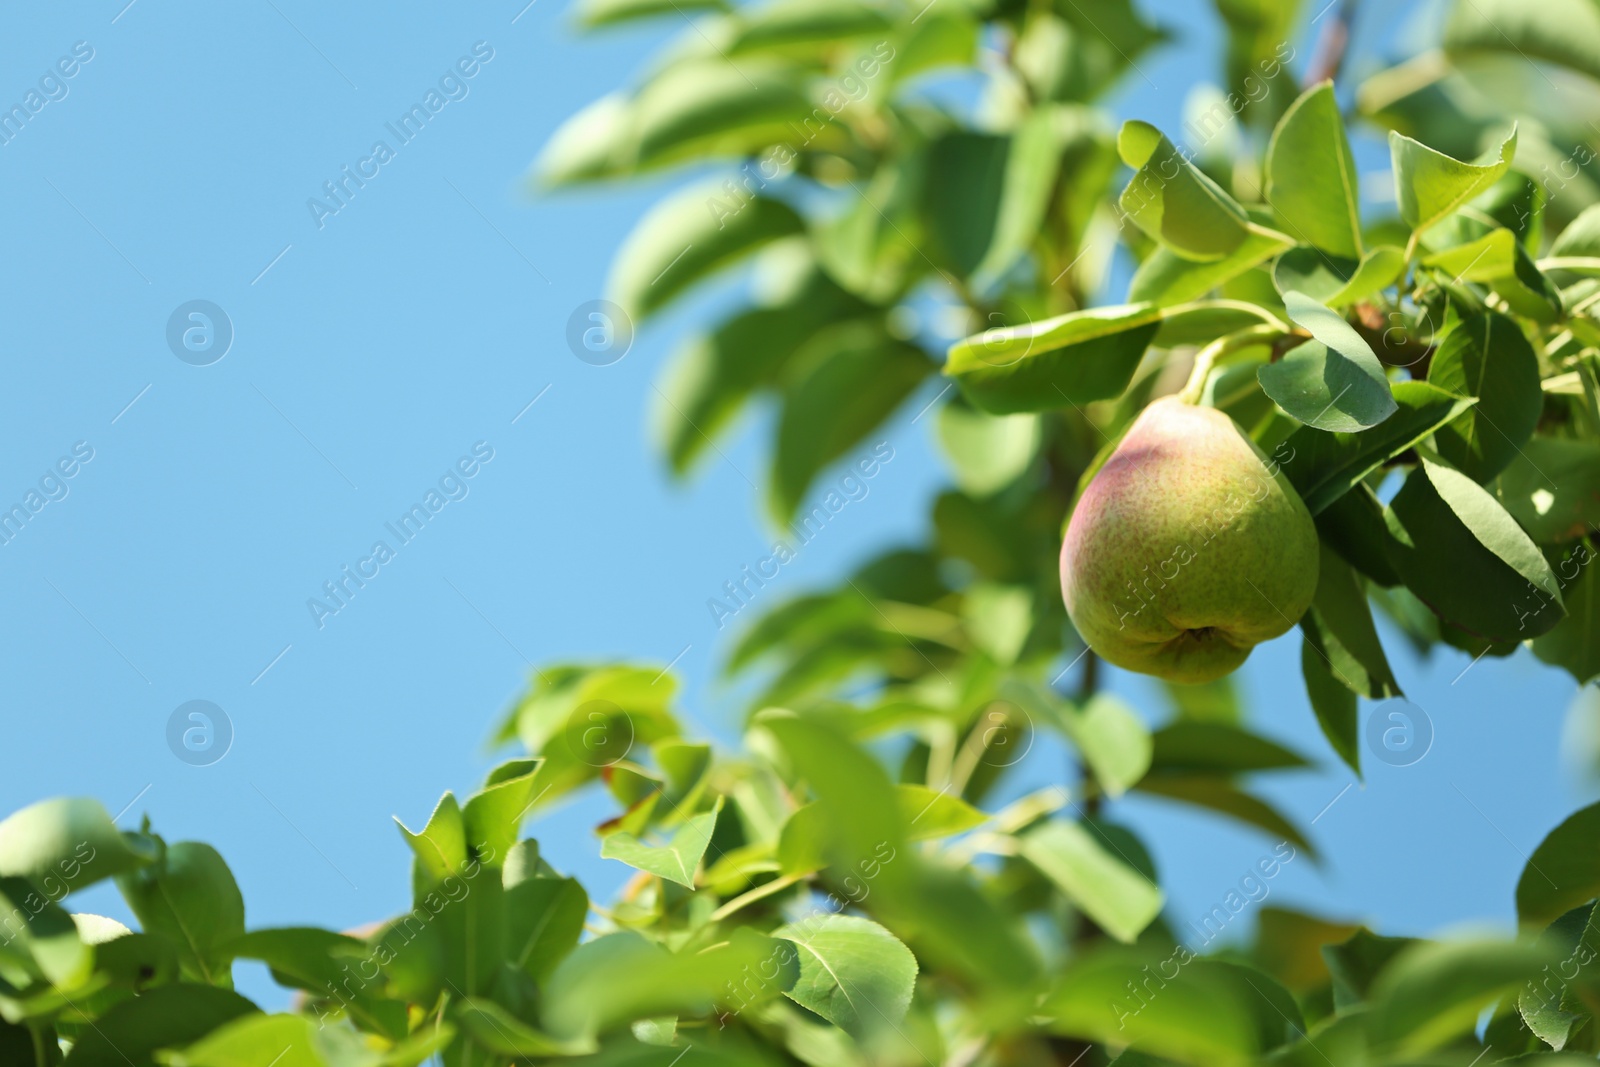 Photo of Ripe juicy pear on tree branch in garden